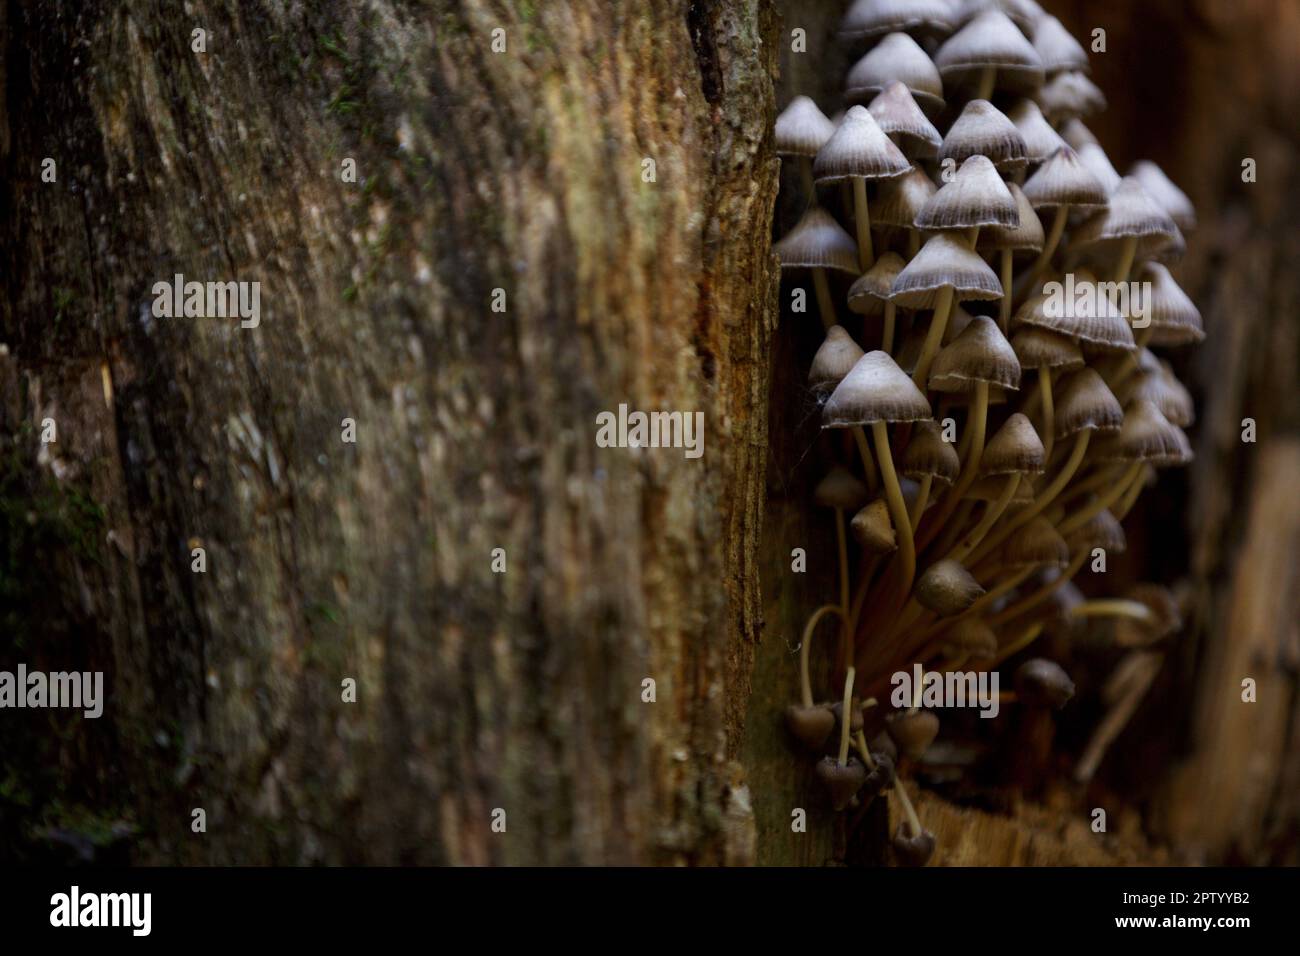 Taburete de sapo, hongo venenoso. Setas forestales en un tronco de árbol con musgo. Un grupo de hongos venenosos en tocón podrido. Psilocybe semilanceata mush Foto de stock